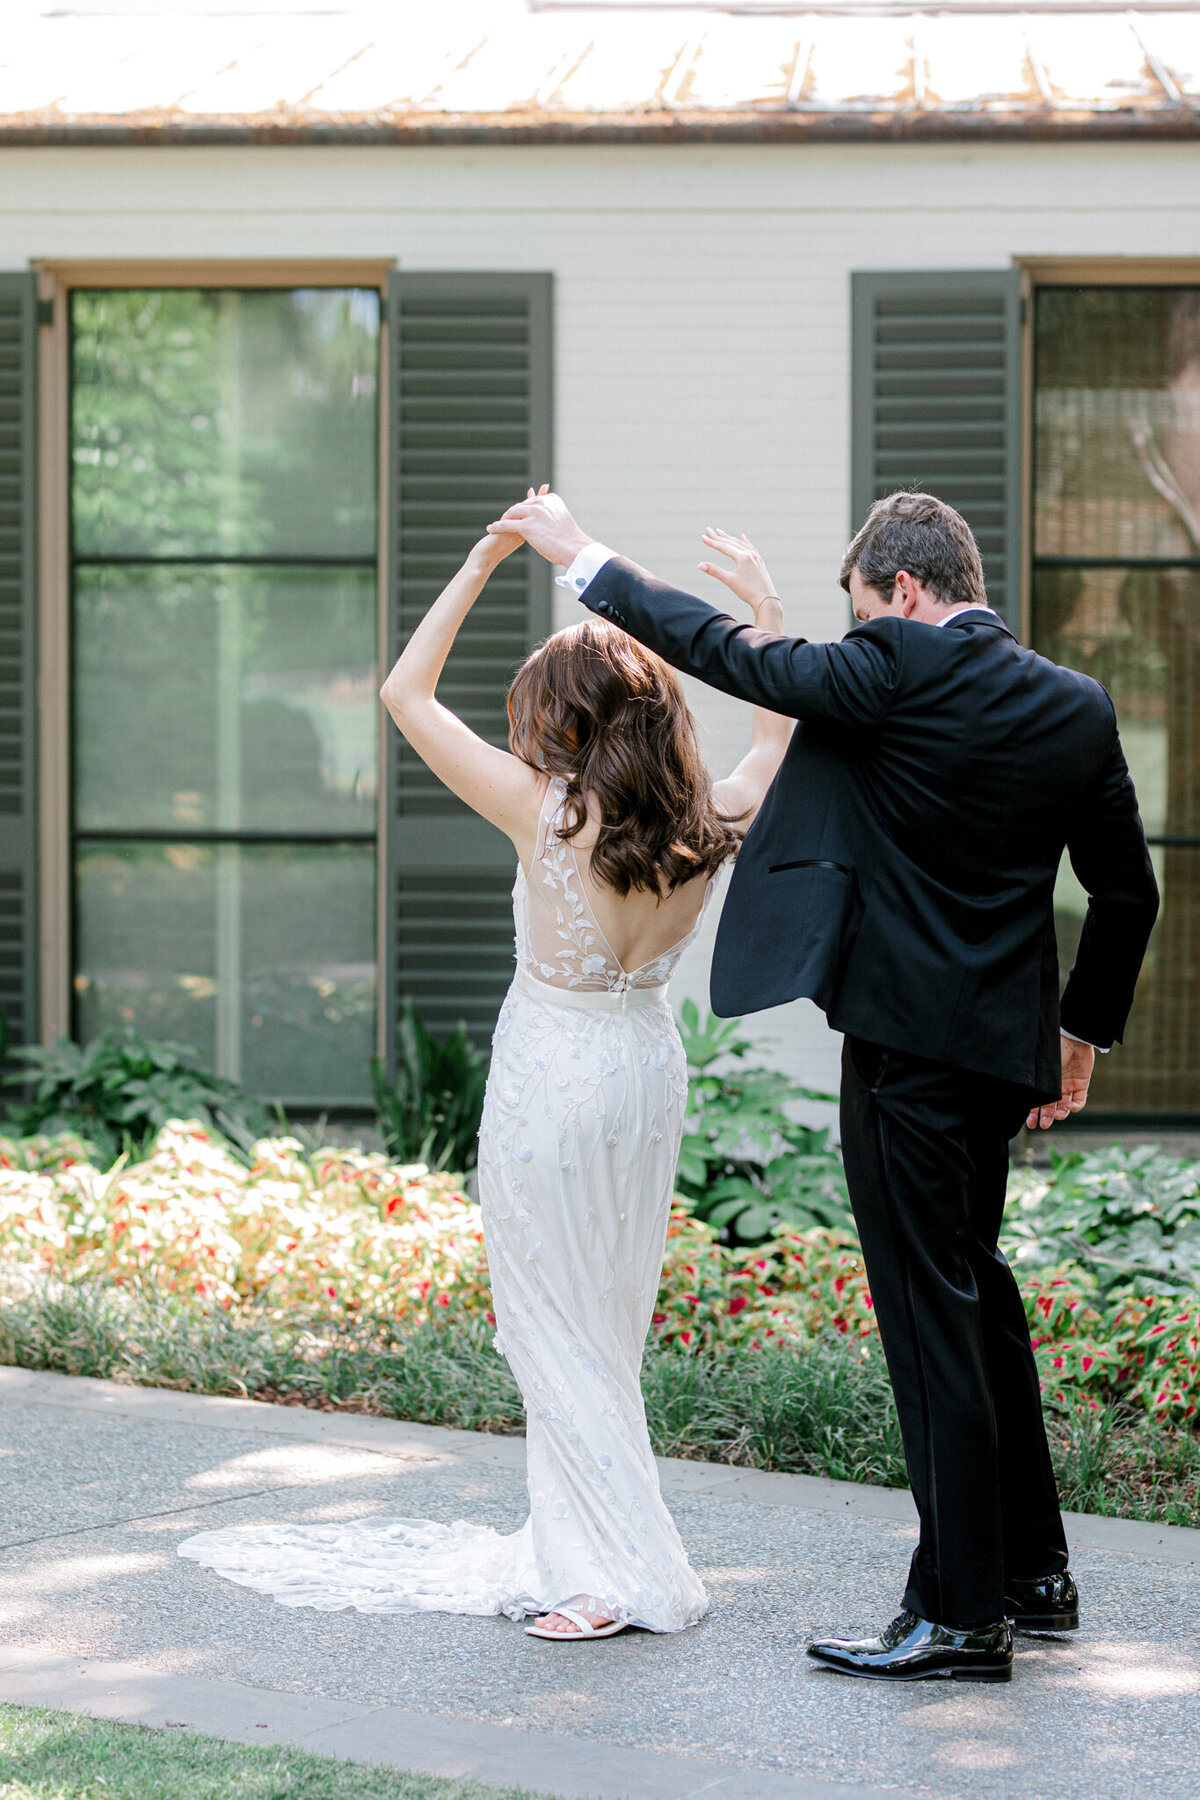 Gena & Matt's Wedding at the Dallas Arboretum | Dallas Wedding Photographer | Sami Kathryn Photography-70